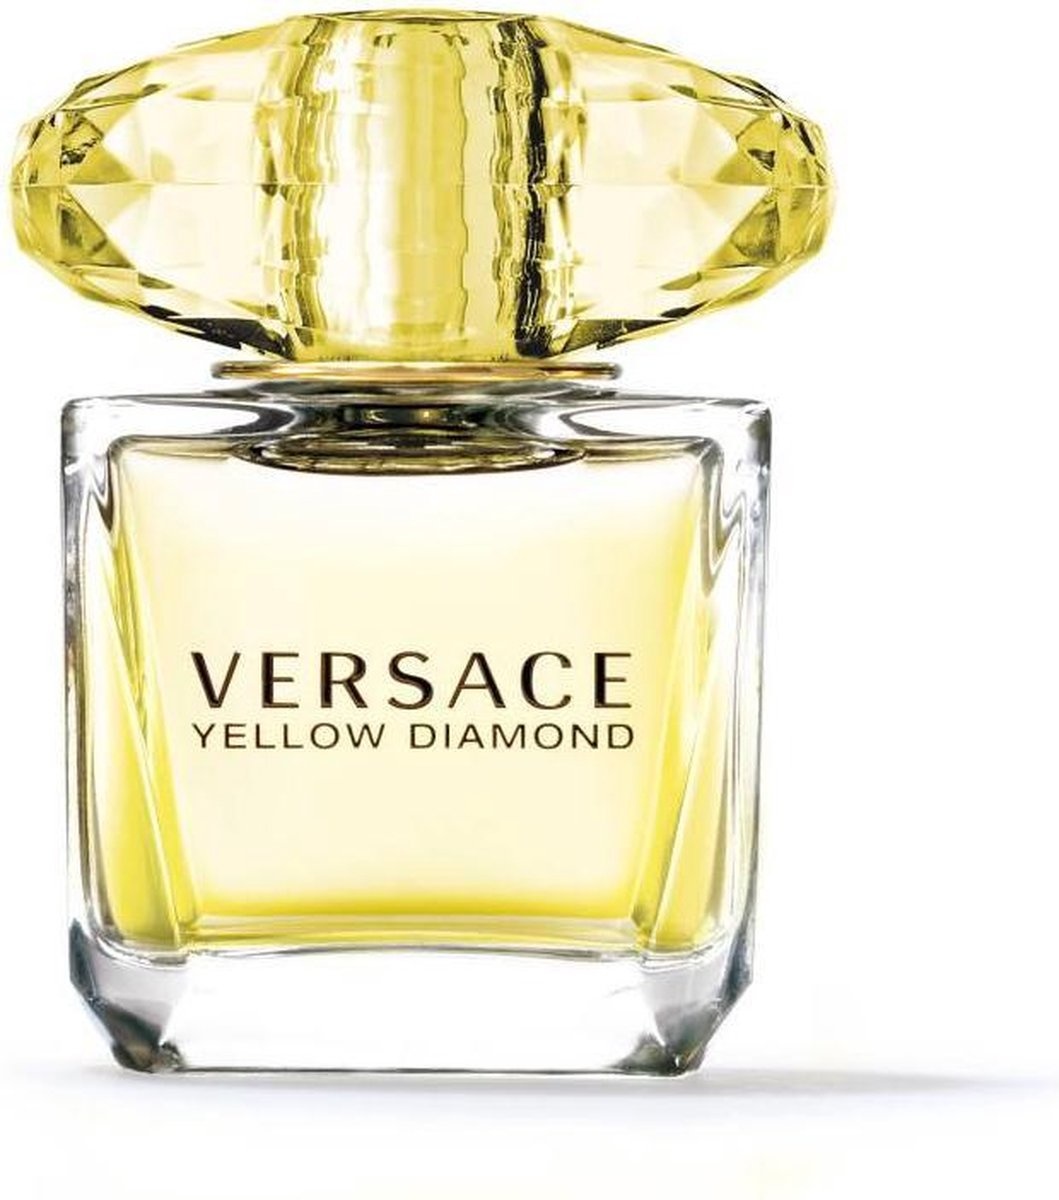 Versace Yellow Diamond pour Femme - 30 ml - Eau de toilette